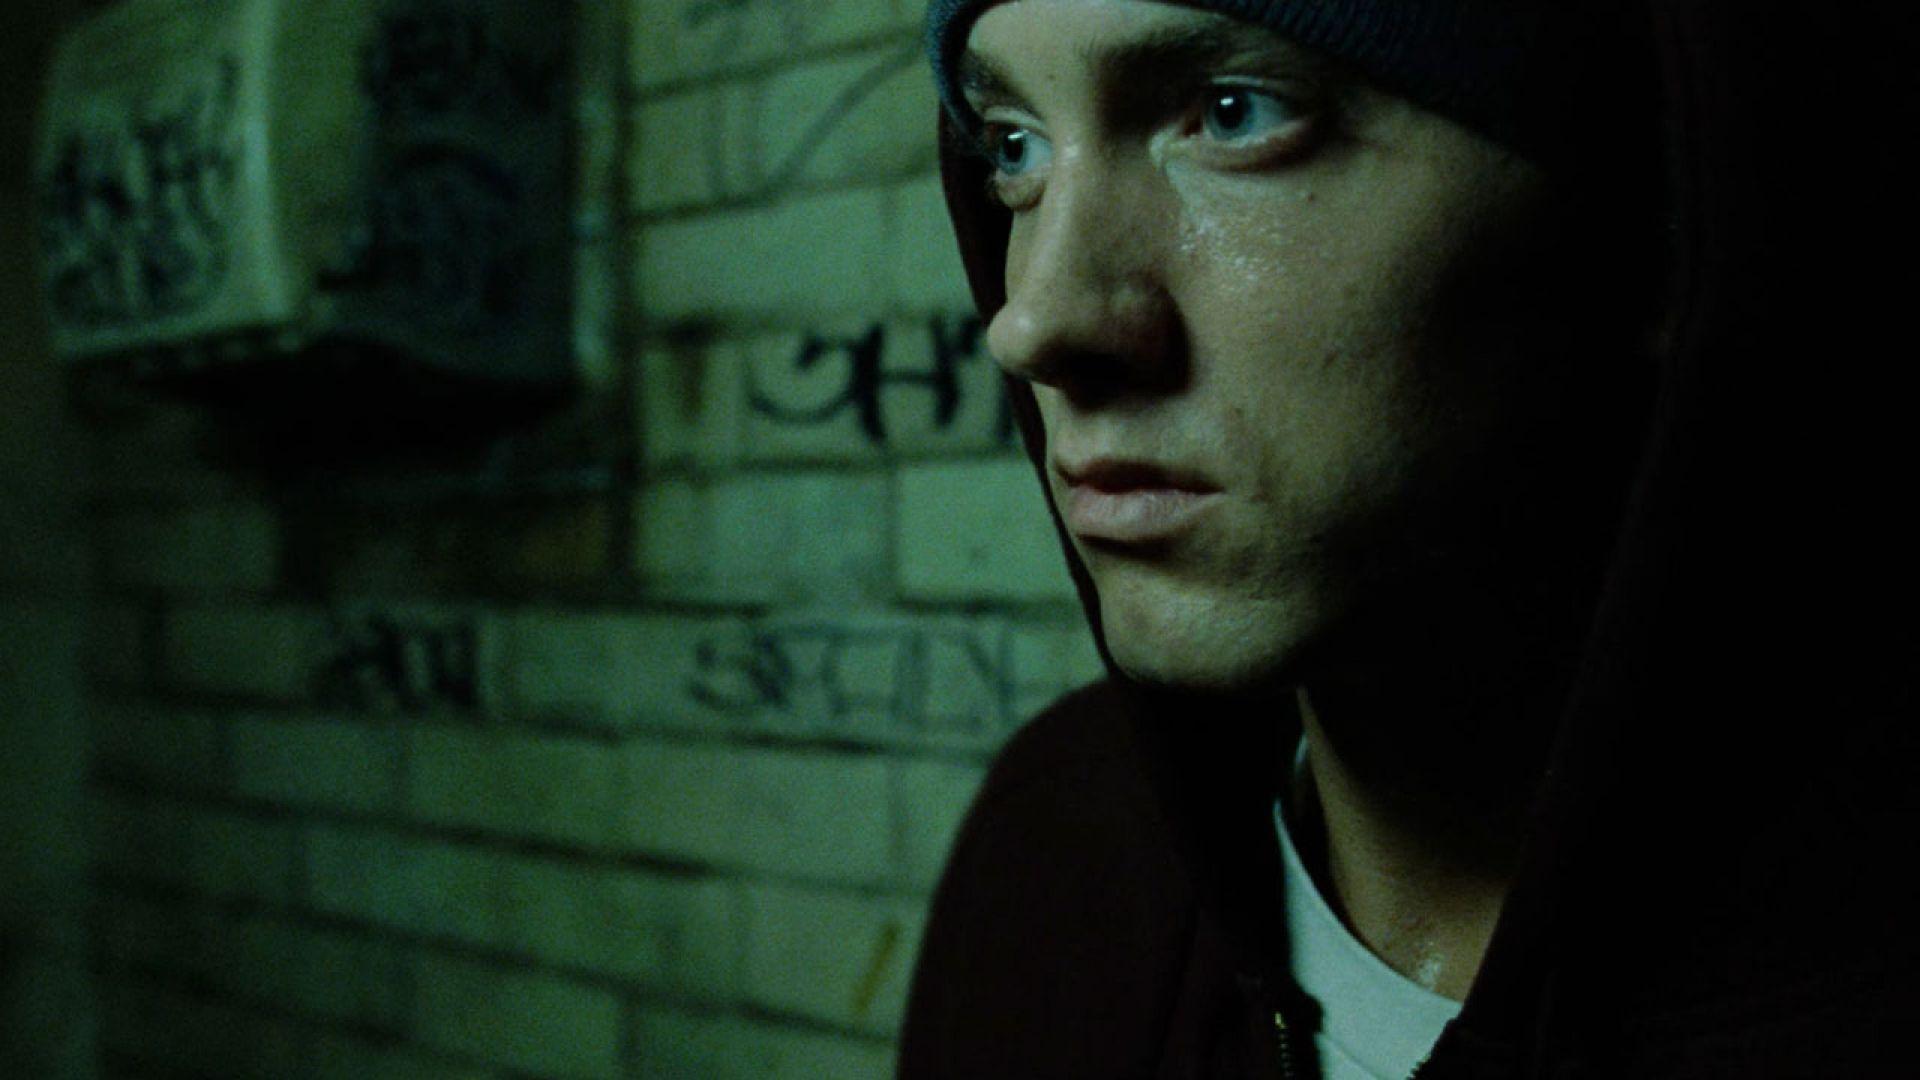 image For > Eminem 8 Mile Wallpaper